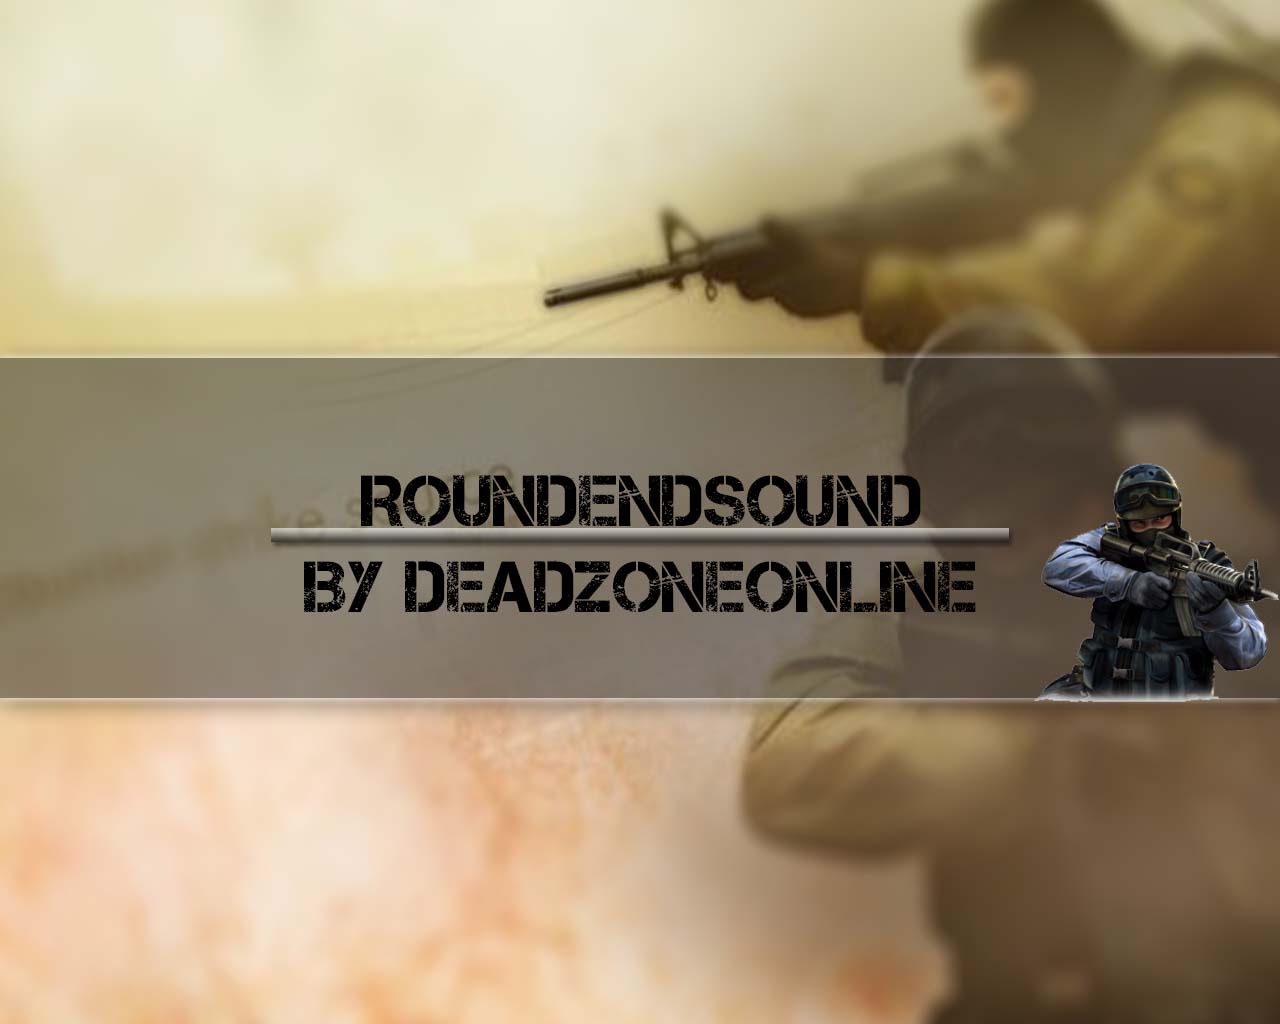 RoundEndSound By deadzoneonline.